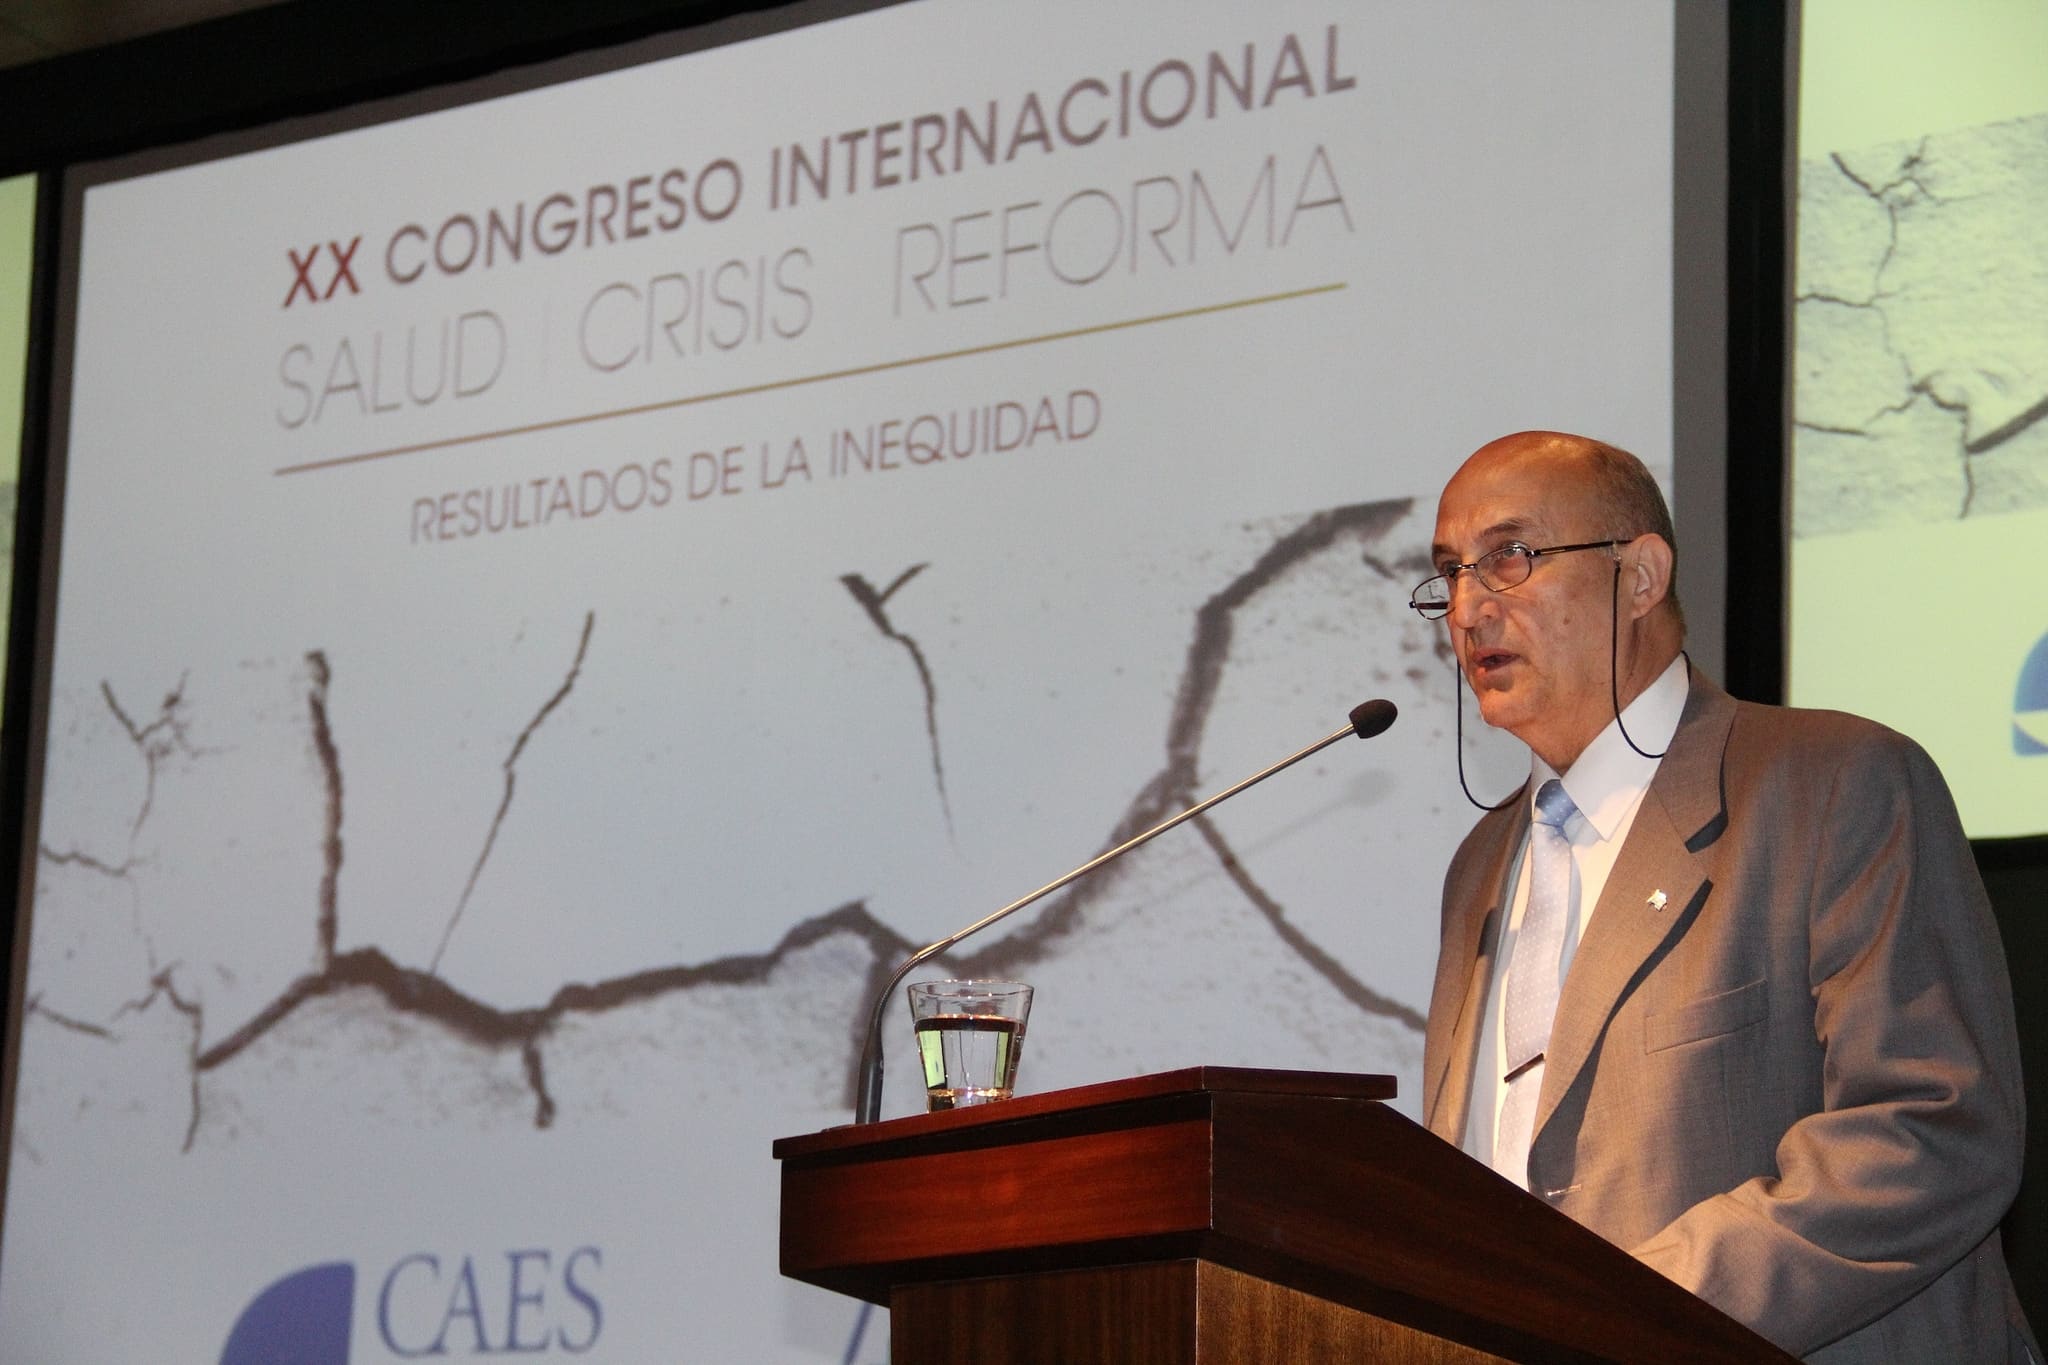 El diputado Roberto Correa presente en la inauguración del XX Congreso Internacional Salud – Crisis – Reforma.